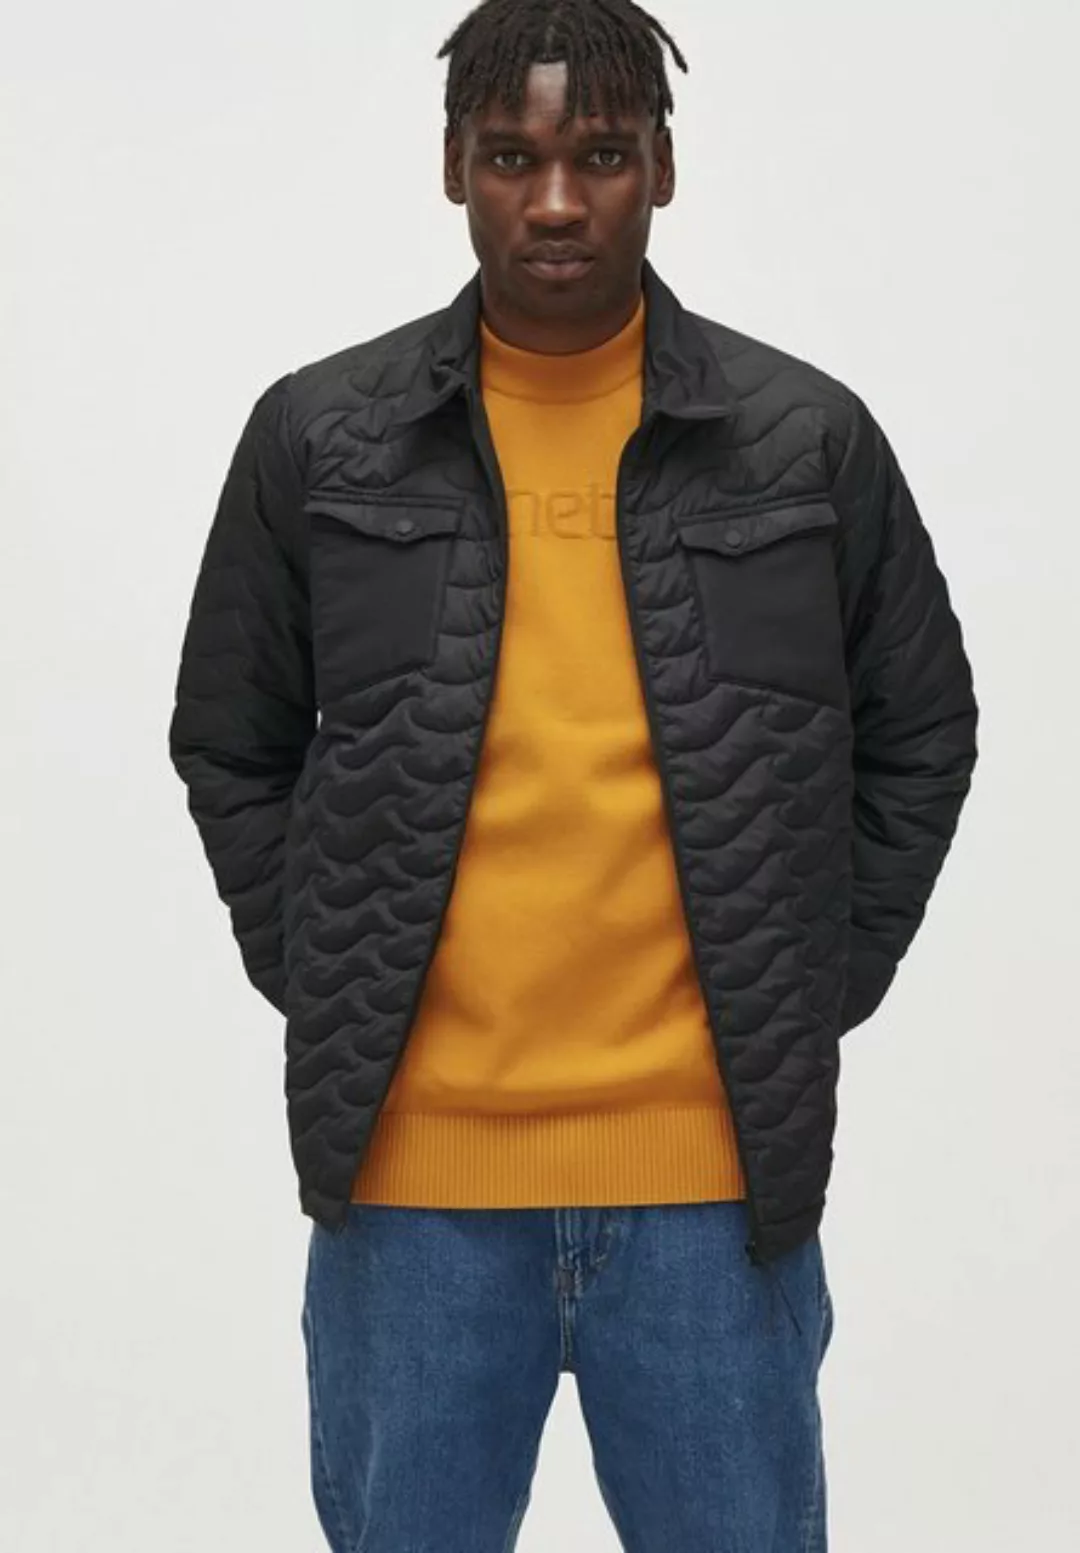 Pinetime Clothing Steppjacke New Wave Insulated Jacket Mit unserer isoliert günstig online kaufen